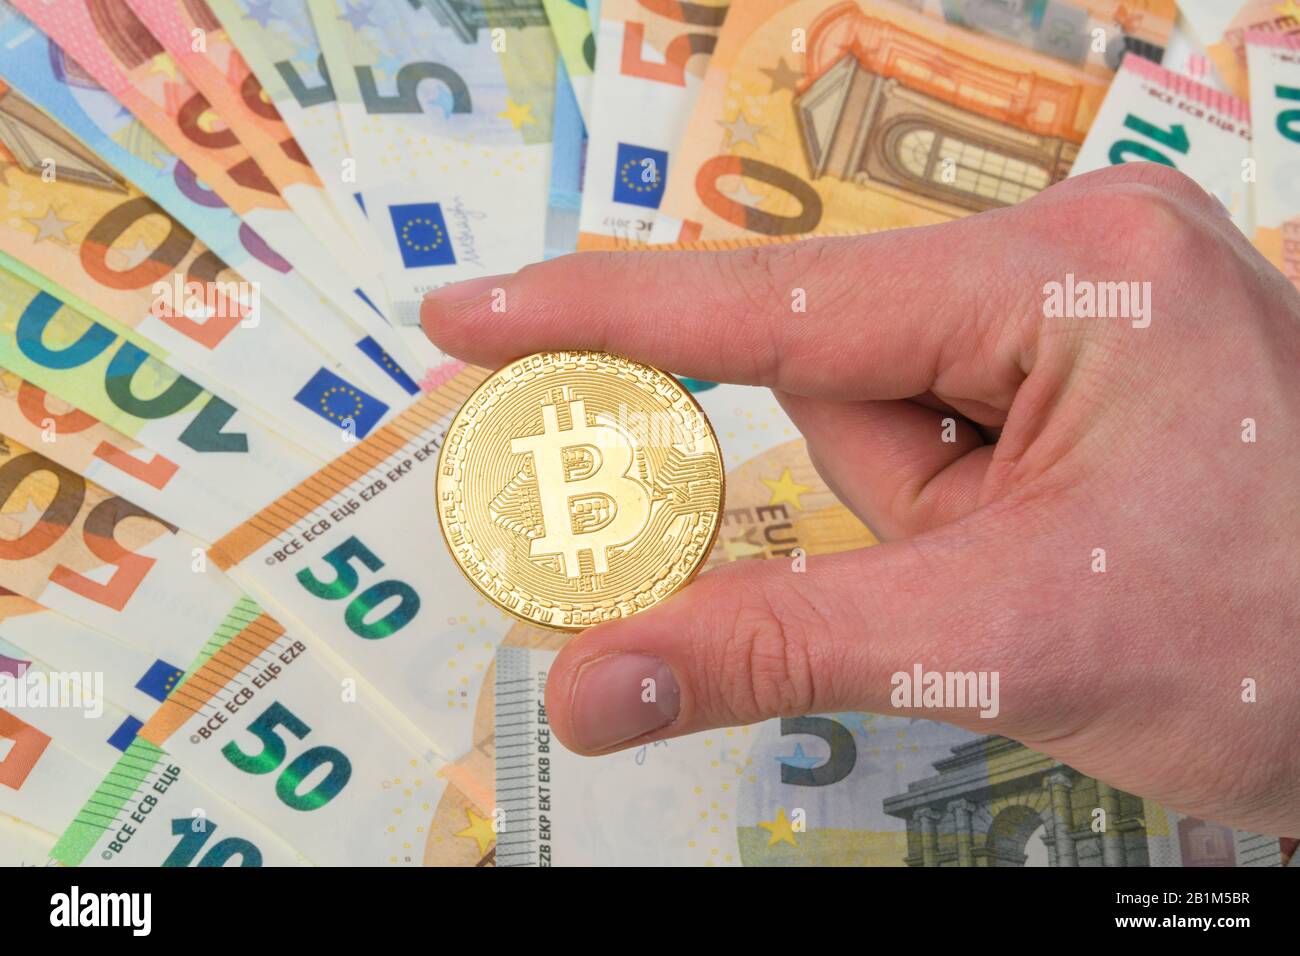 Bitcoinmünze, Euroscheine, Studioaufnahme Foto de stock